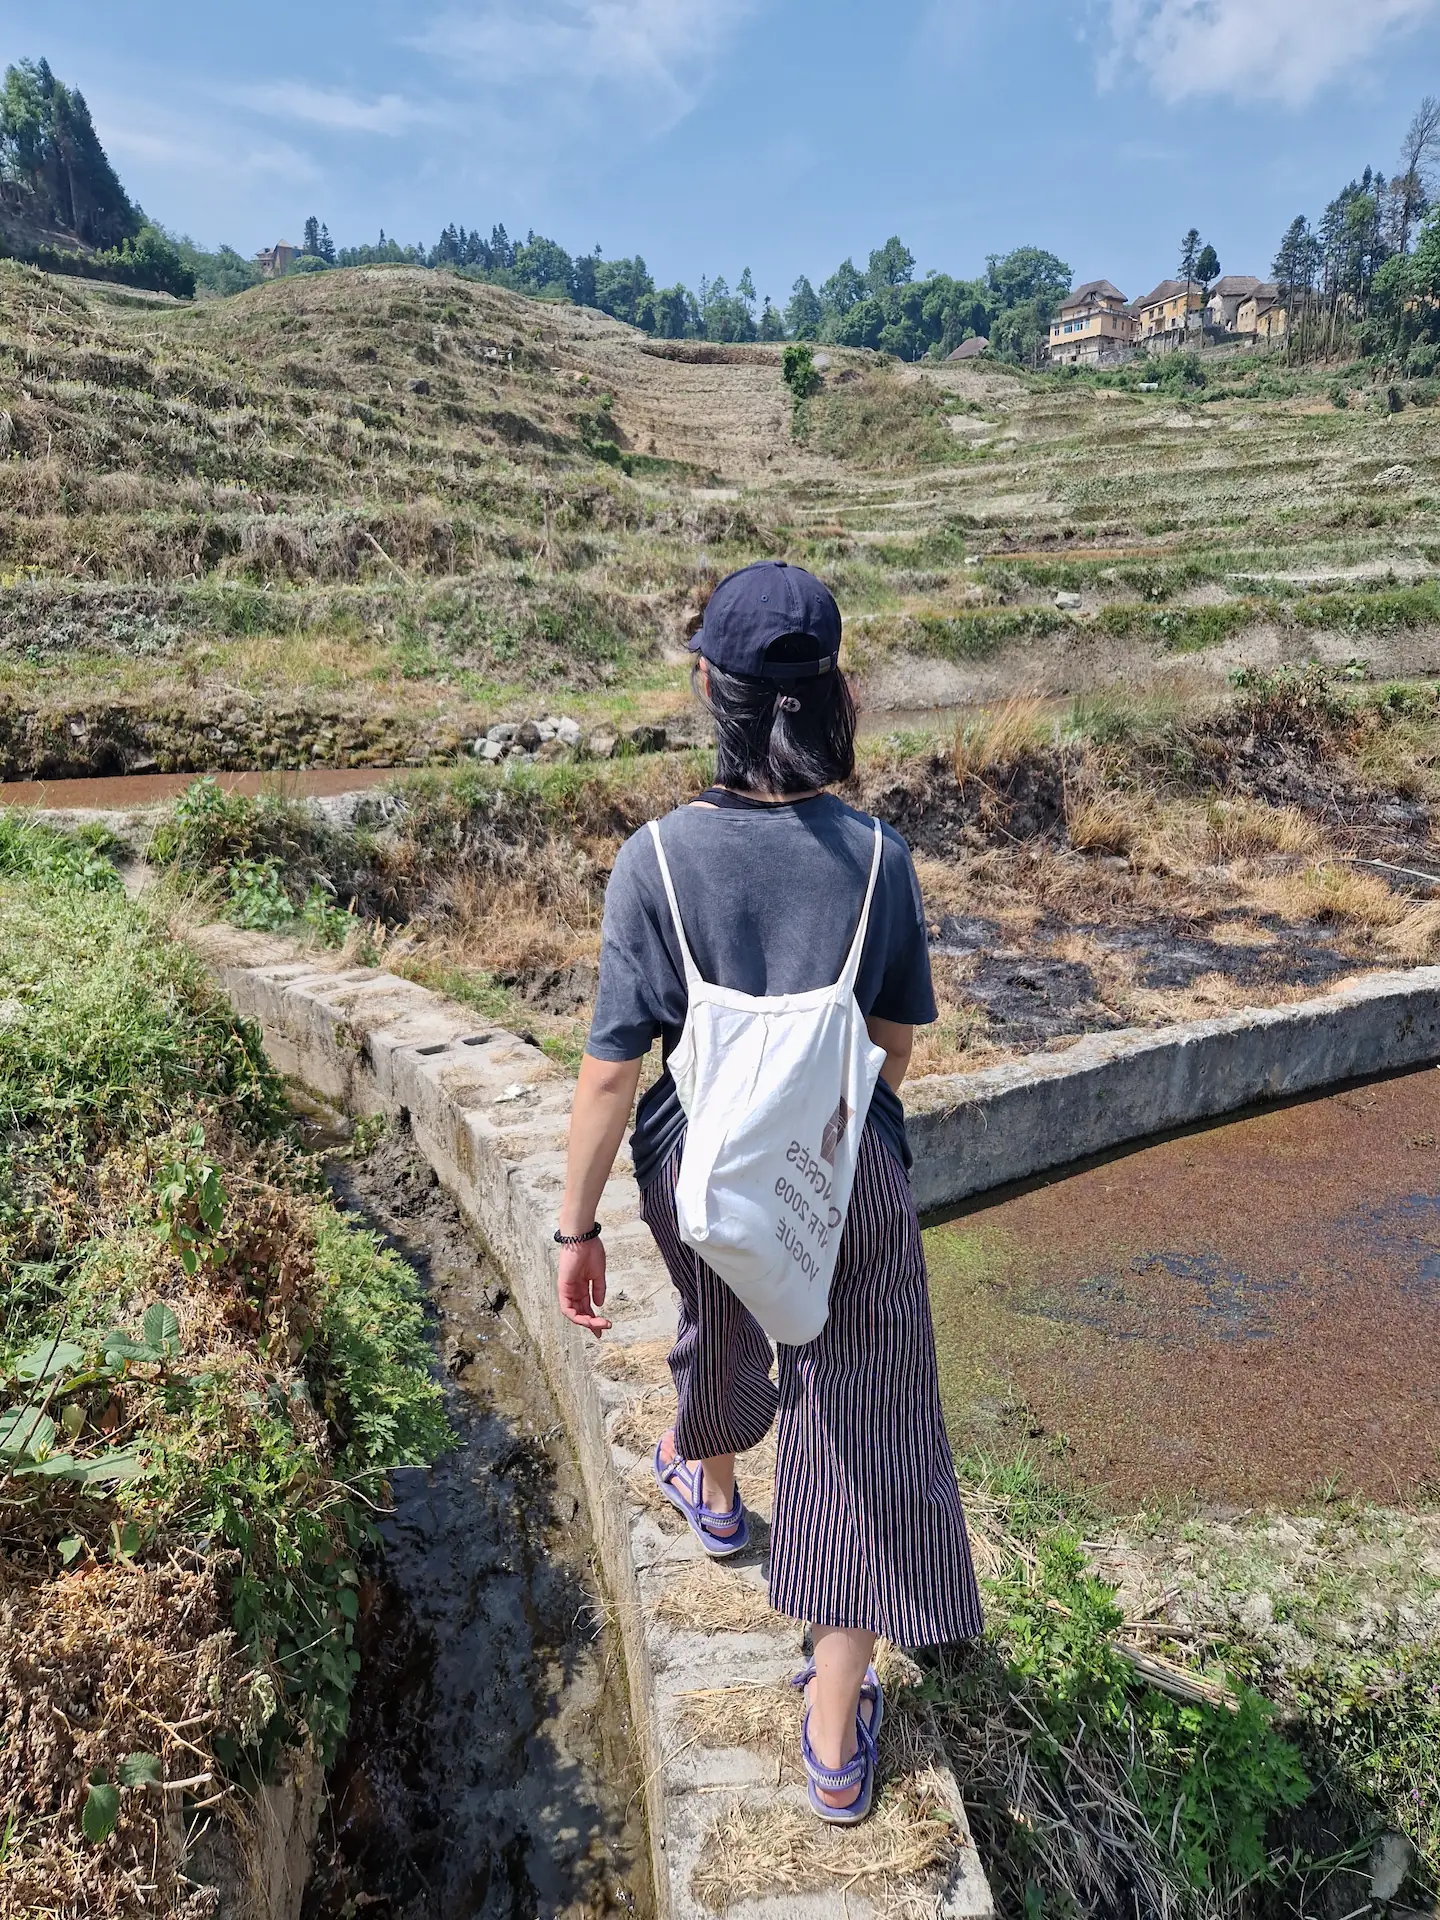 Clara marche sur une section bétonnée entre deux rizières.